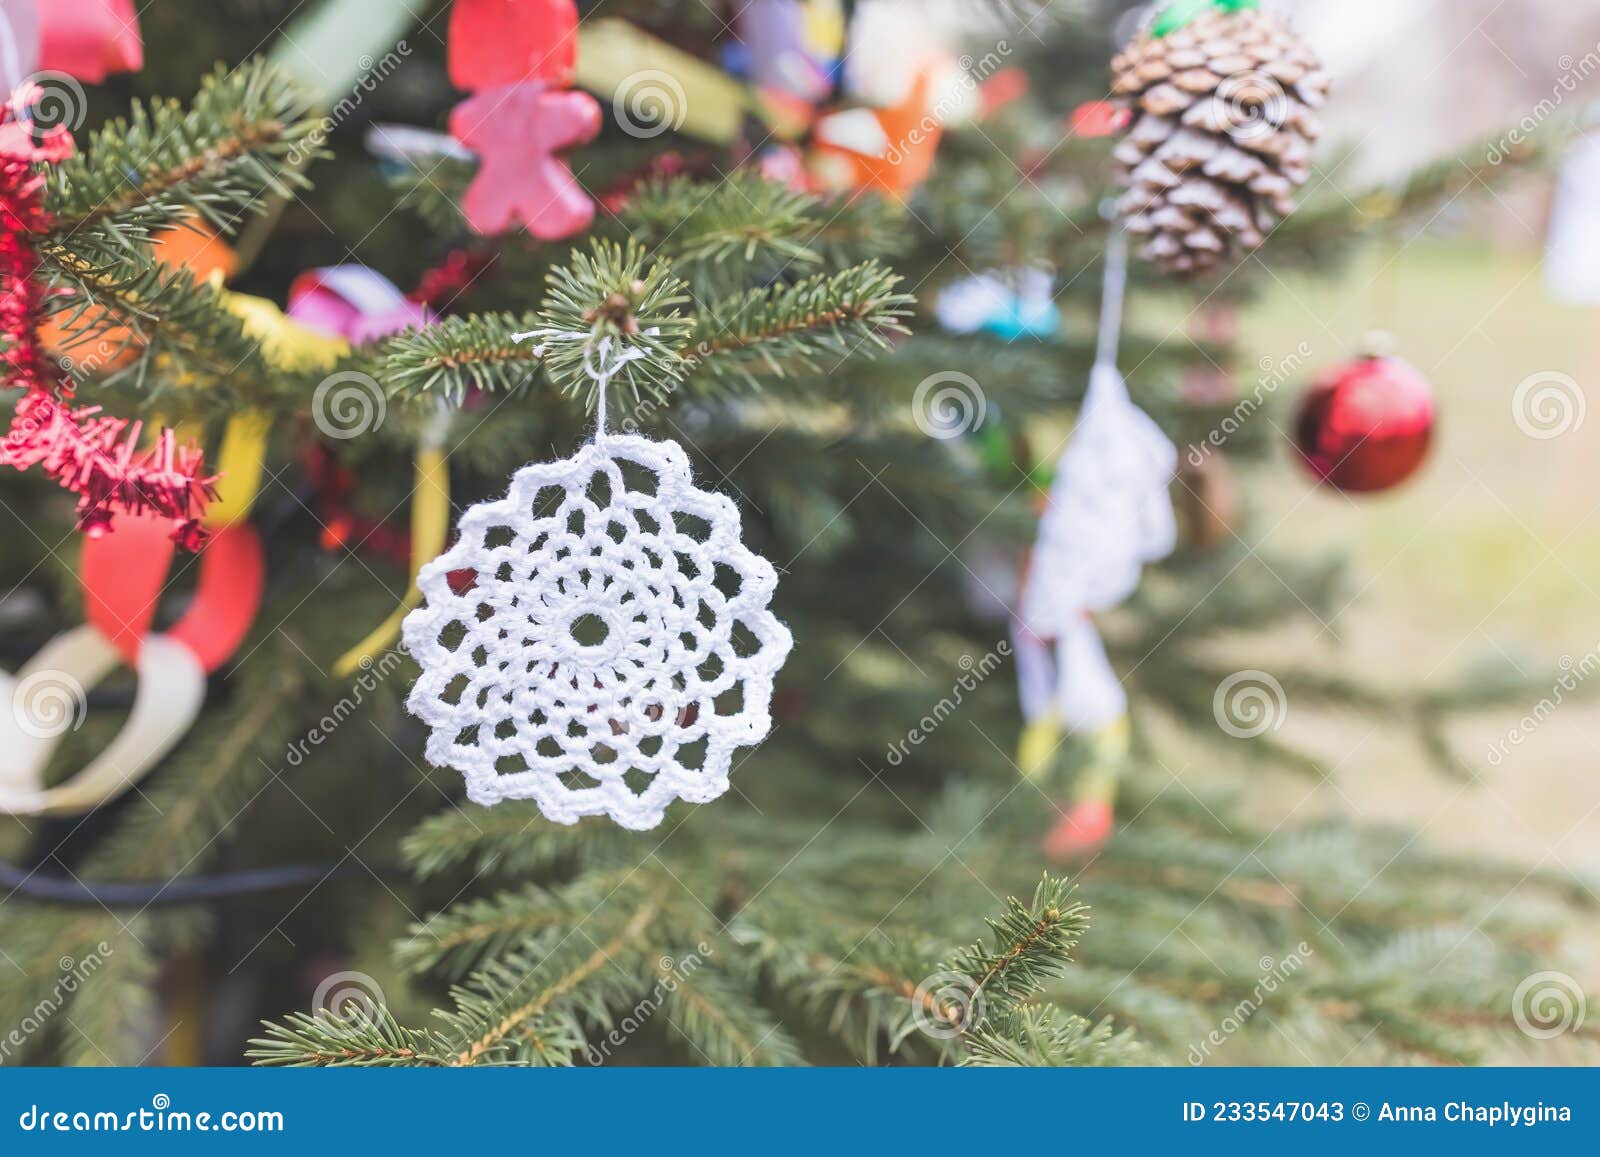 Decoração De Crochê Feita à Mão Na árvore De Natal Imagem de Stock - Imagem  de feriado, filial: 233547043